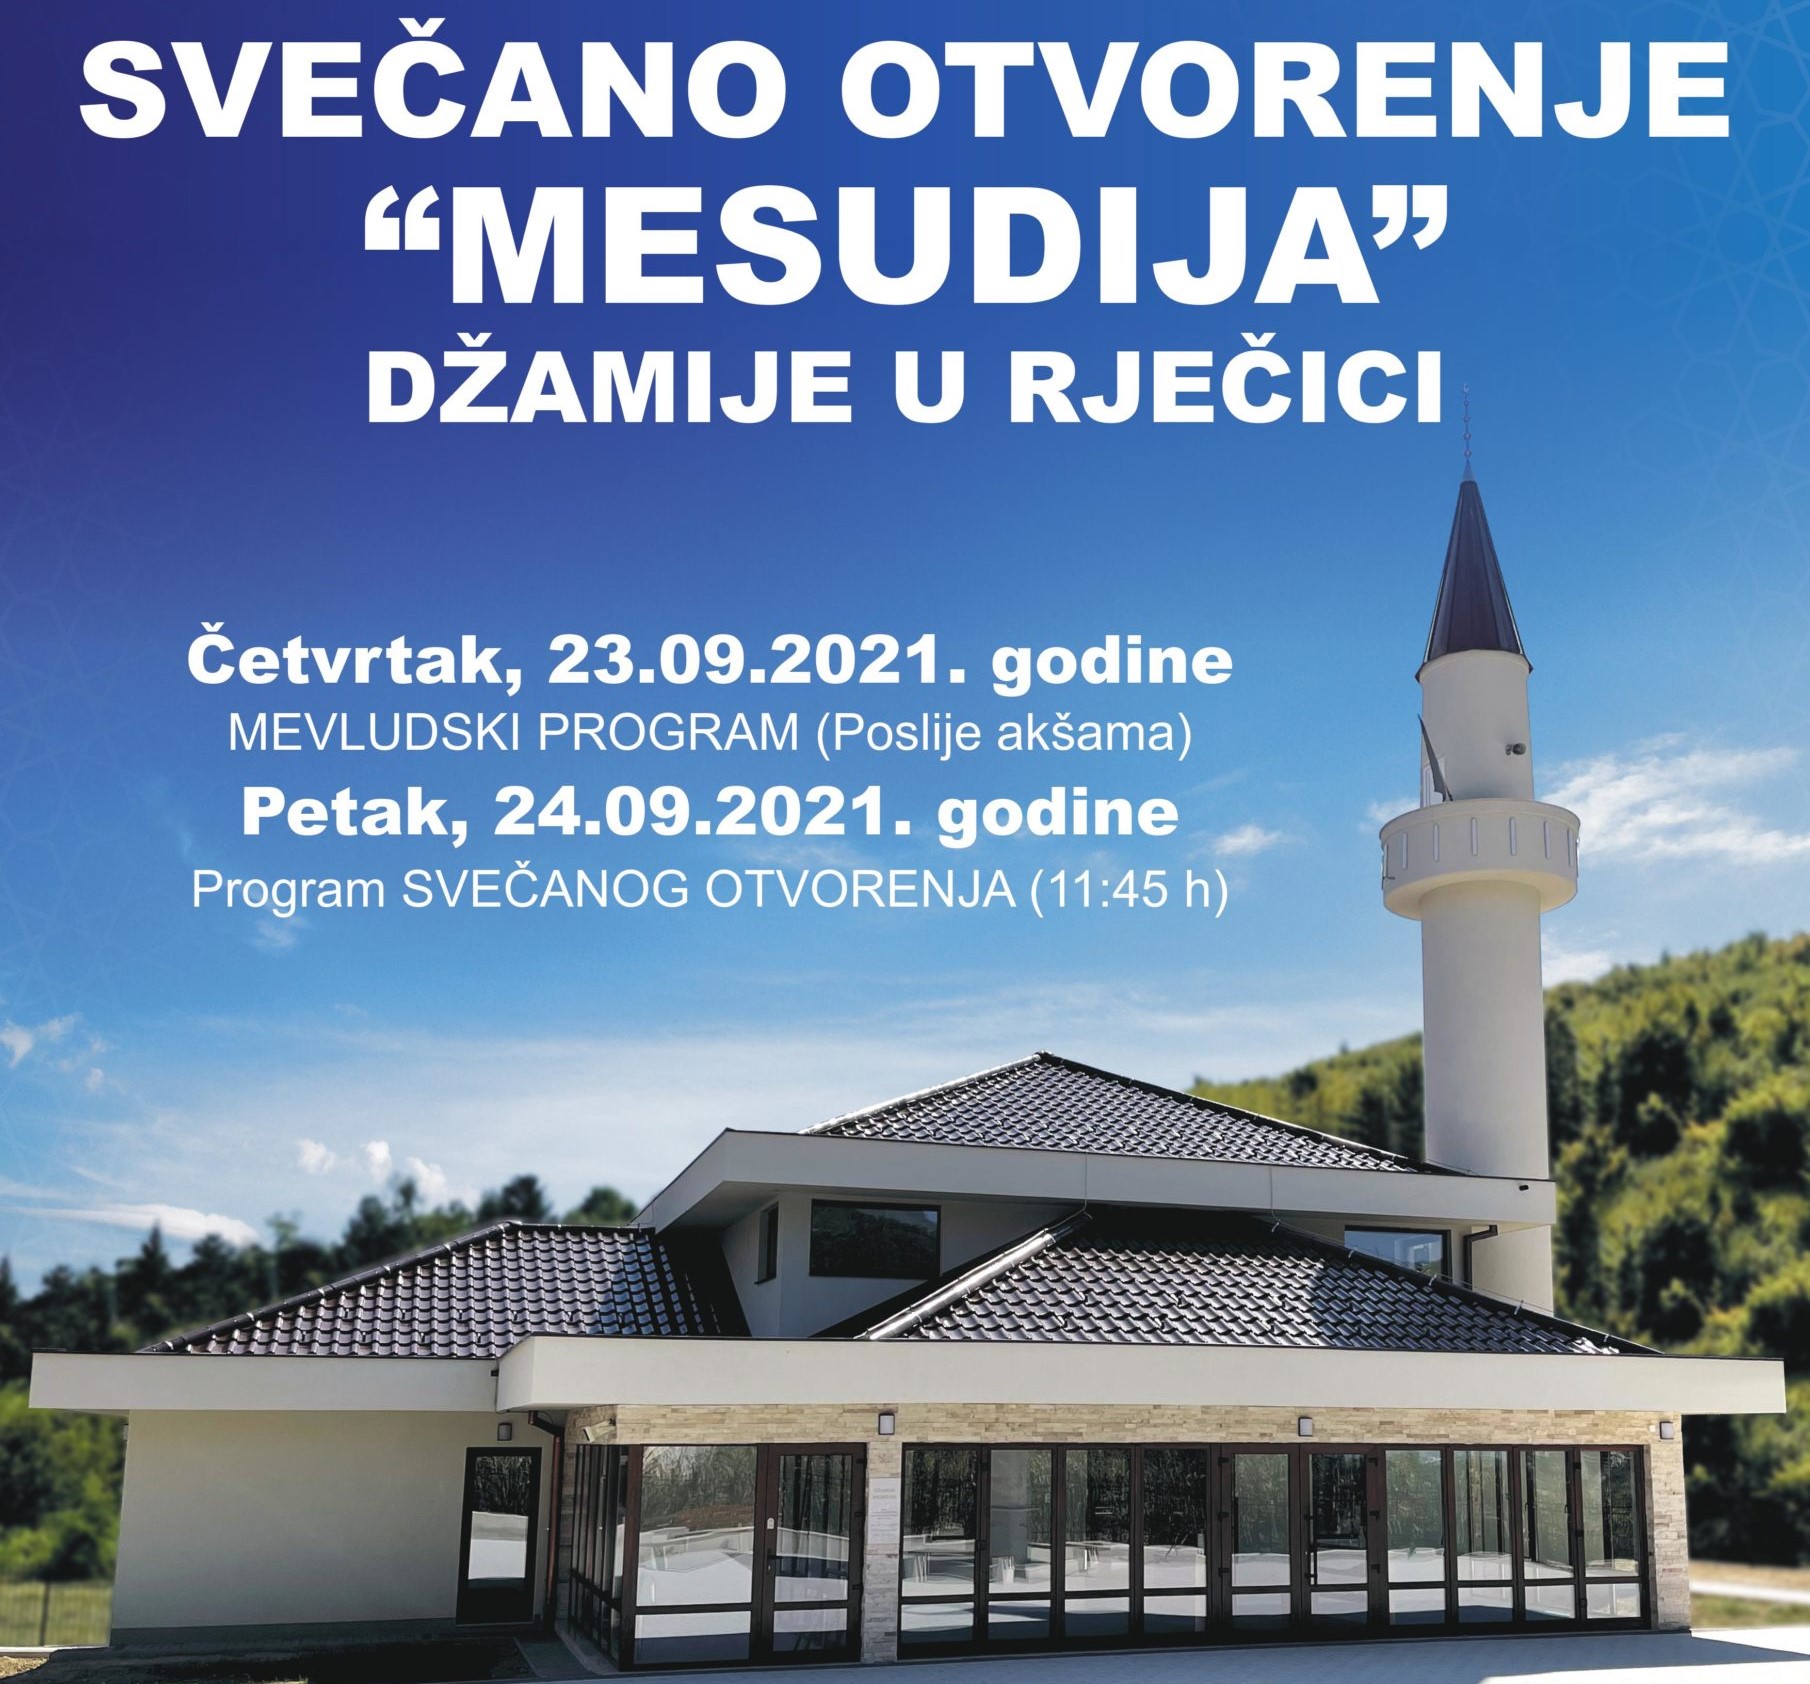 Svečano otvorenje džamije Mesudija u naselju Rječica 24. septembra 2021. godine